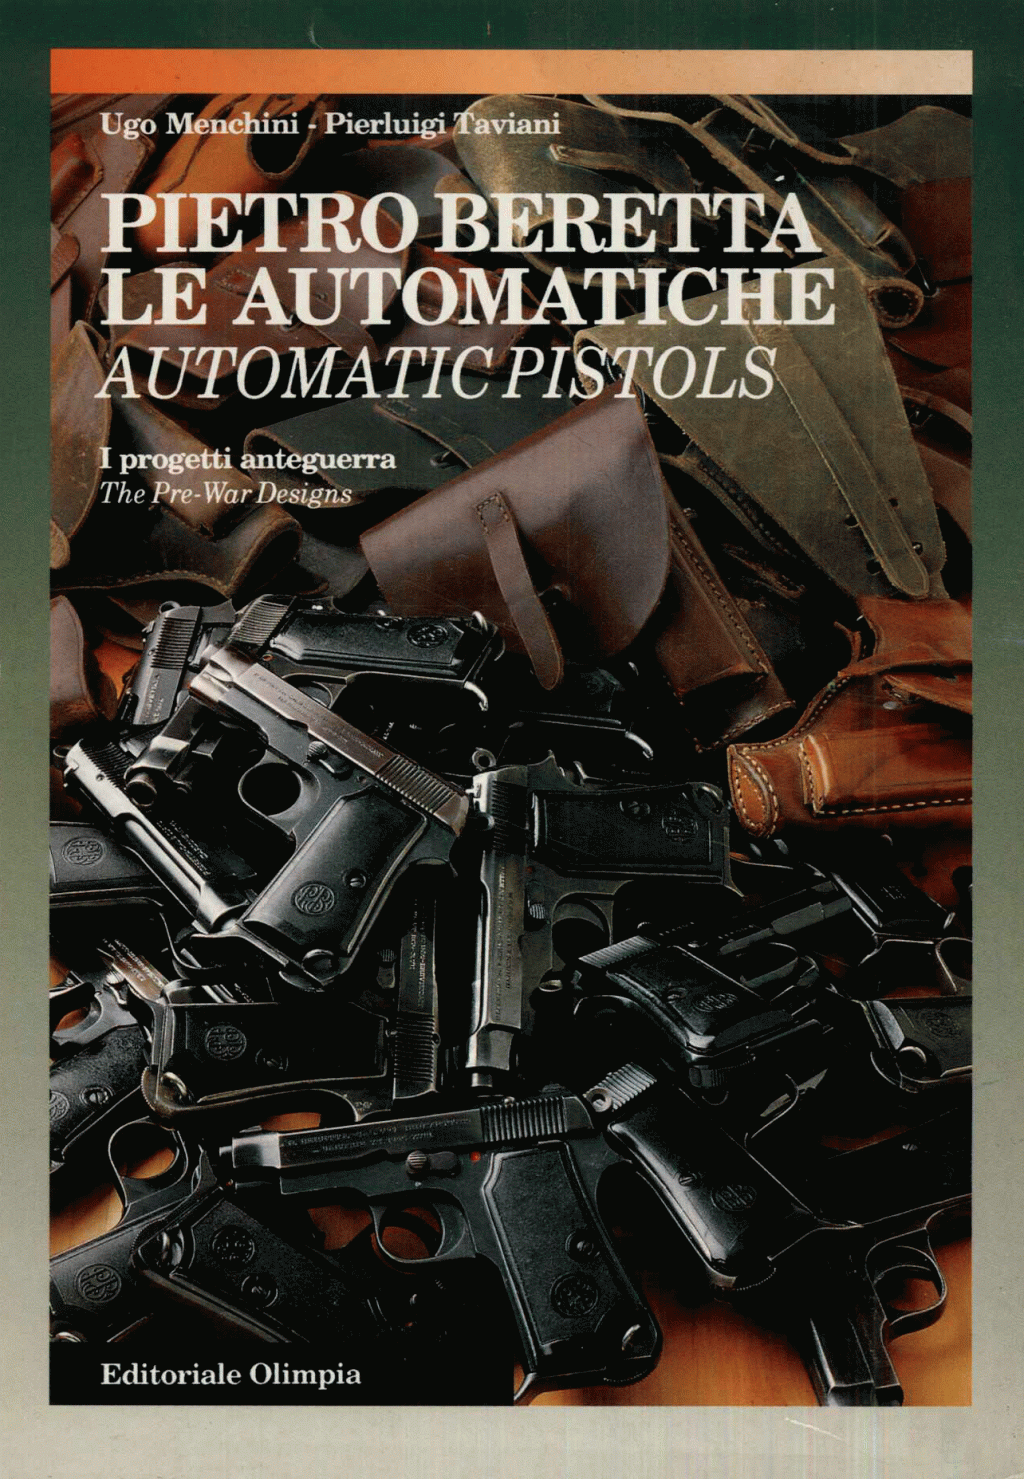 Pietro Beretta le automatiche. Automatic pistols. I progetti anteguerra. The Pre-War Designs